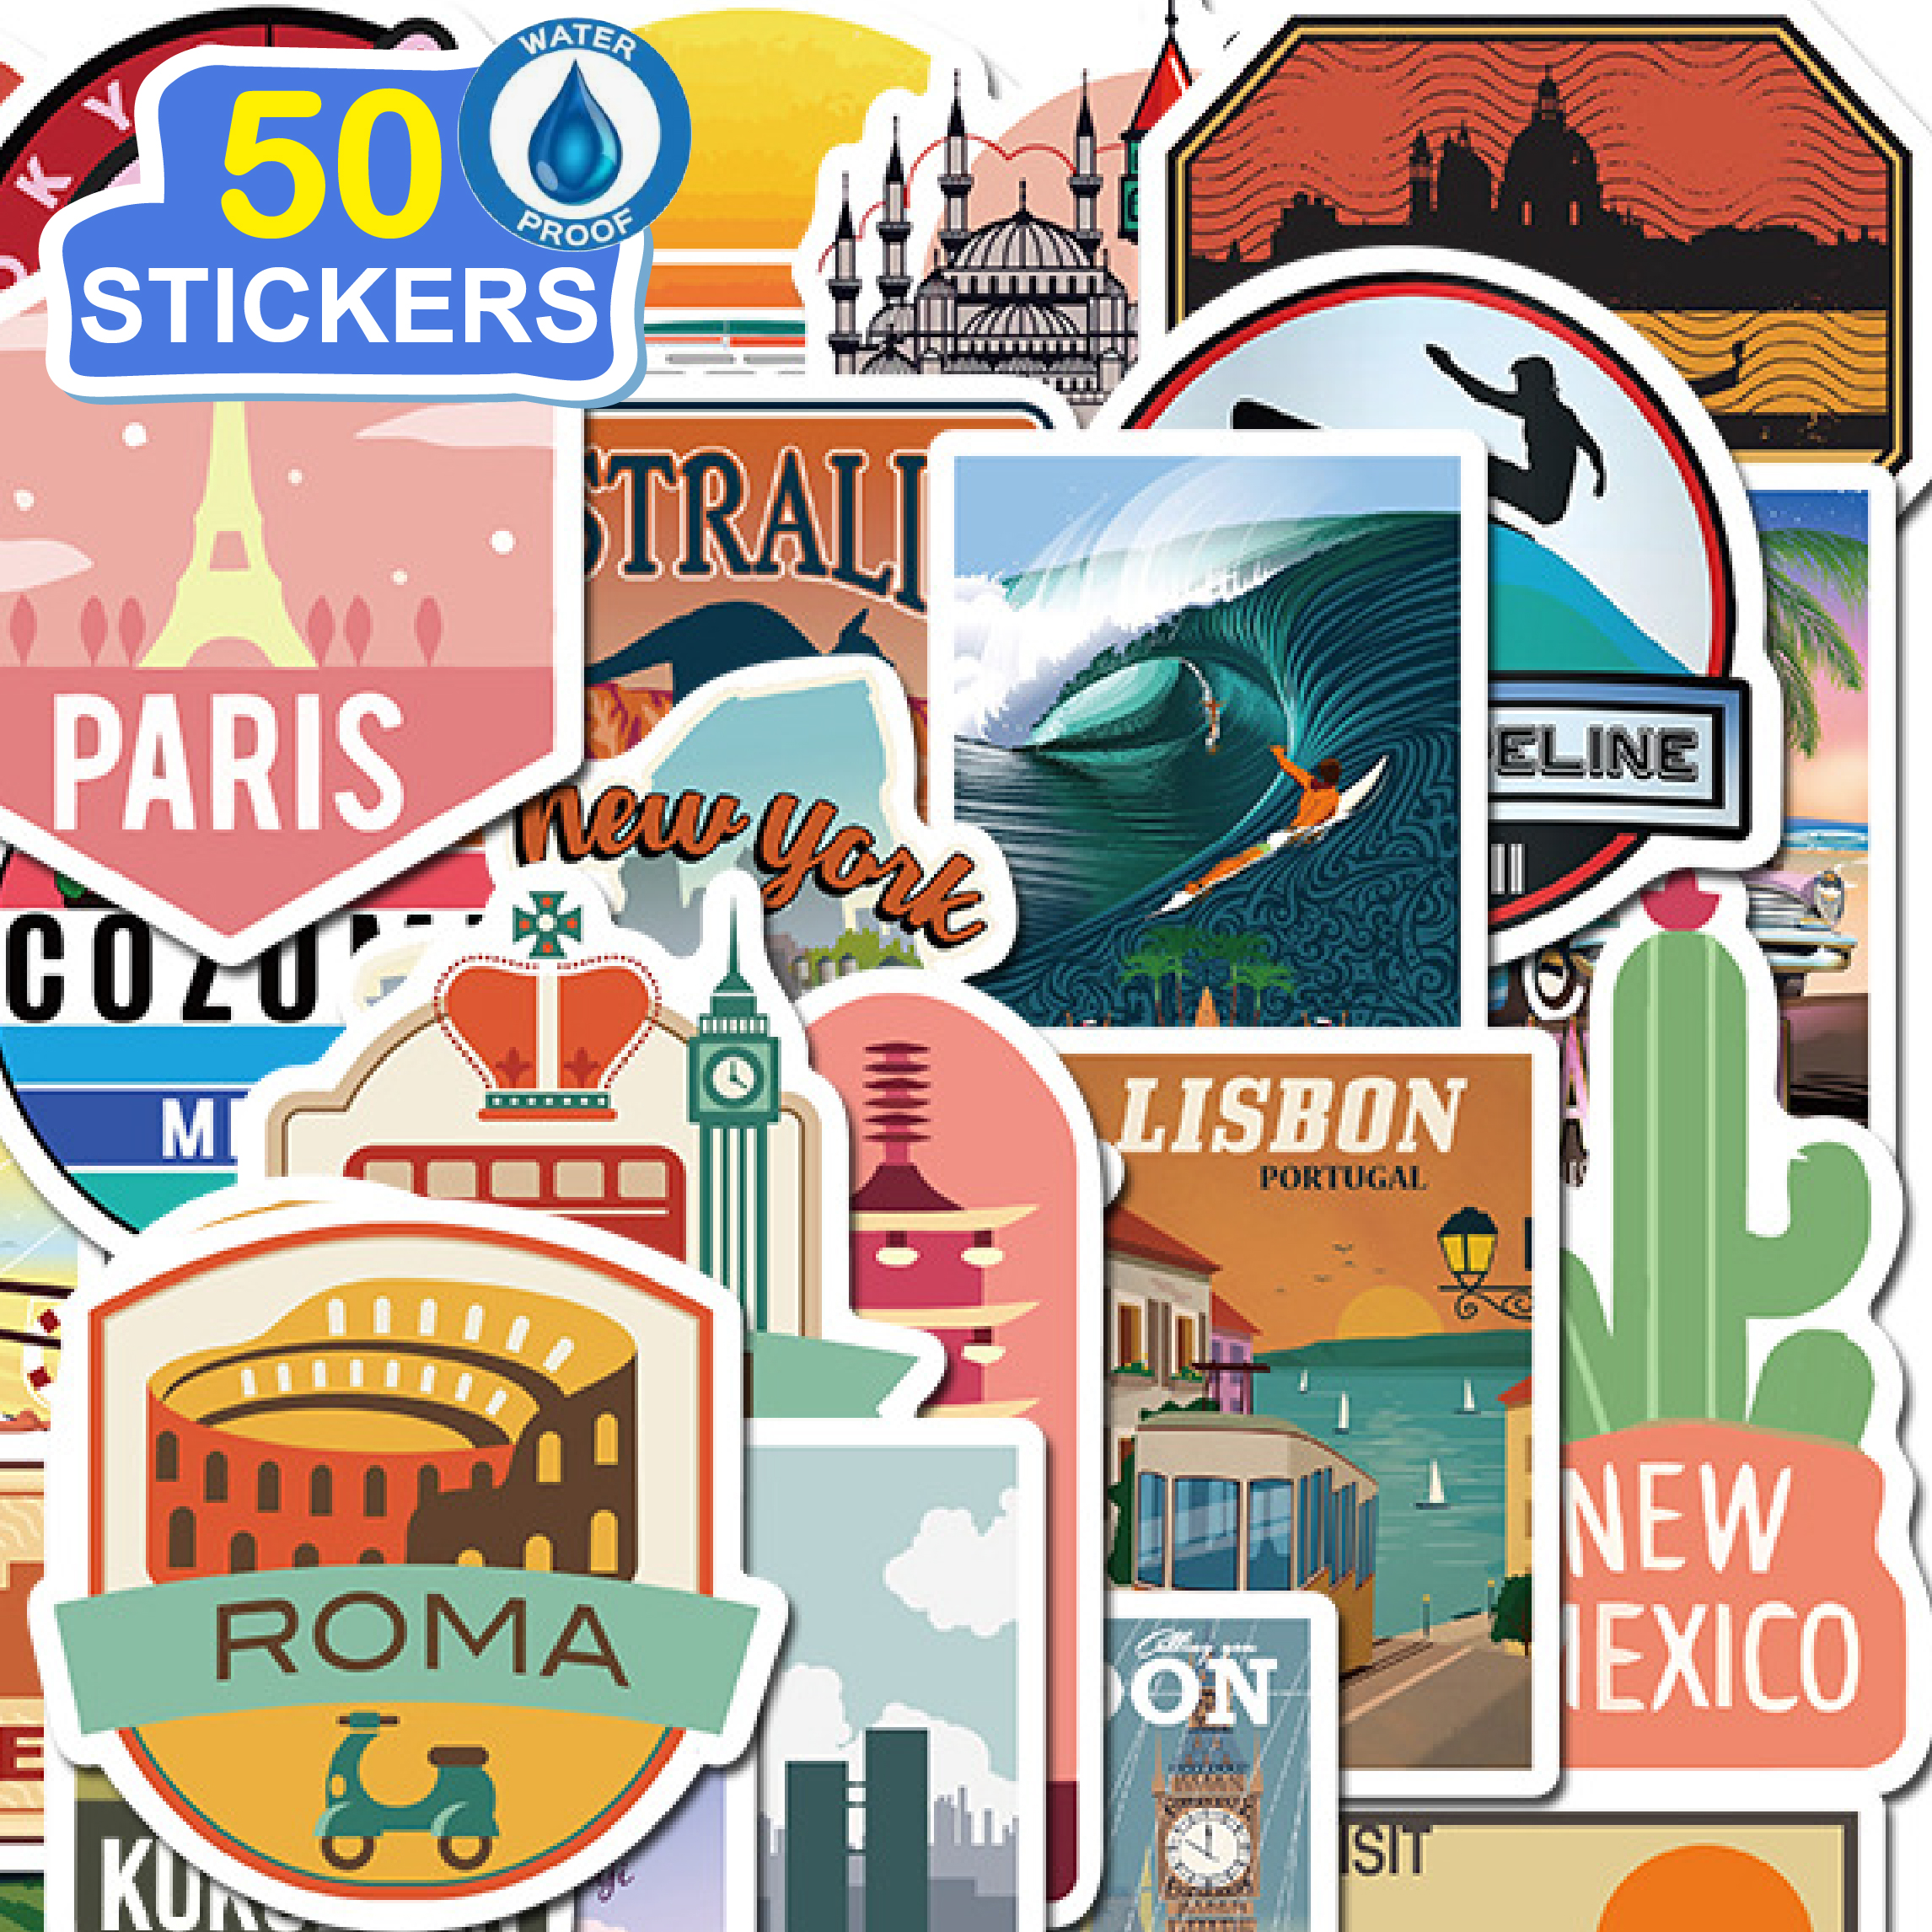 50 Stickers Vintage Travel Label trang trí laptop, điện thoại, ipad, cốc nước, sổ tay, vali du lịch, scooter, ván trược - Chống thấm nước - FiDi